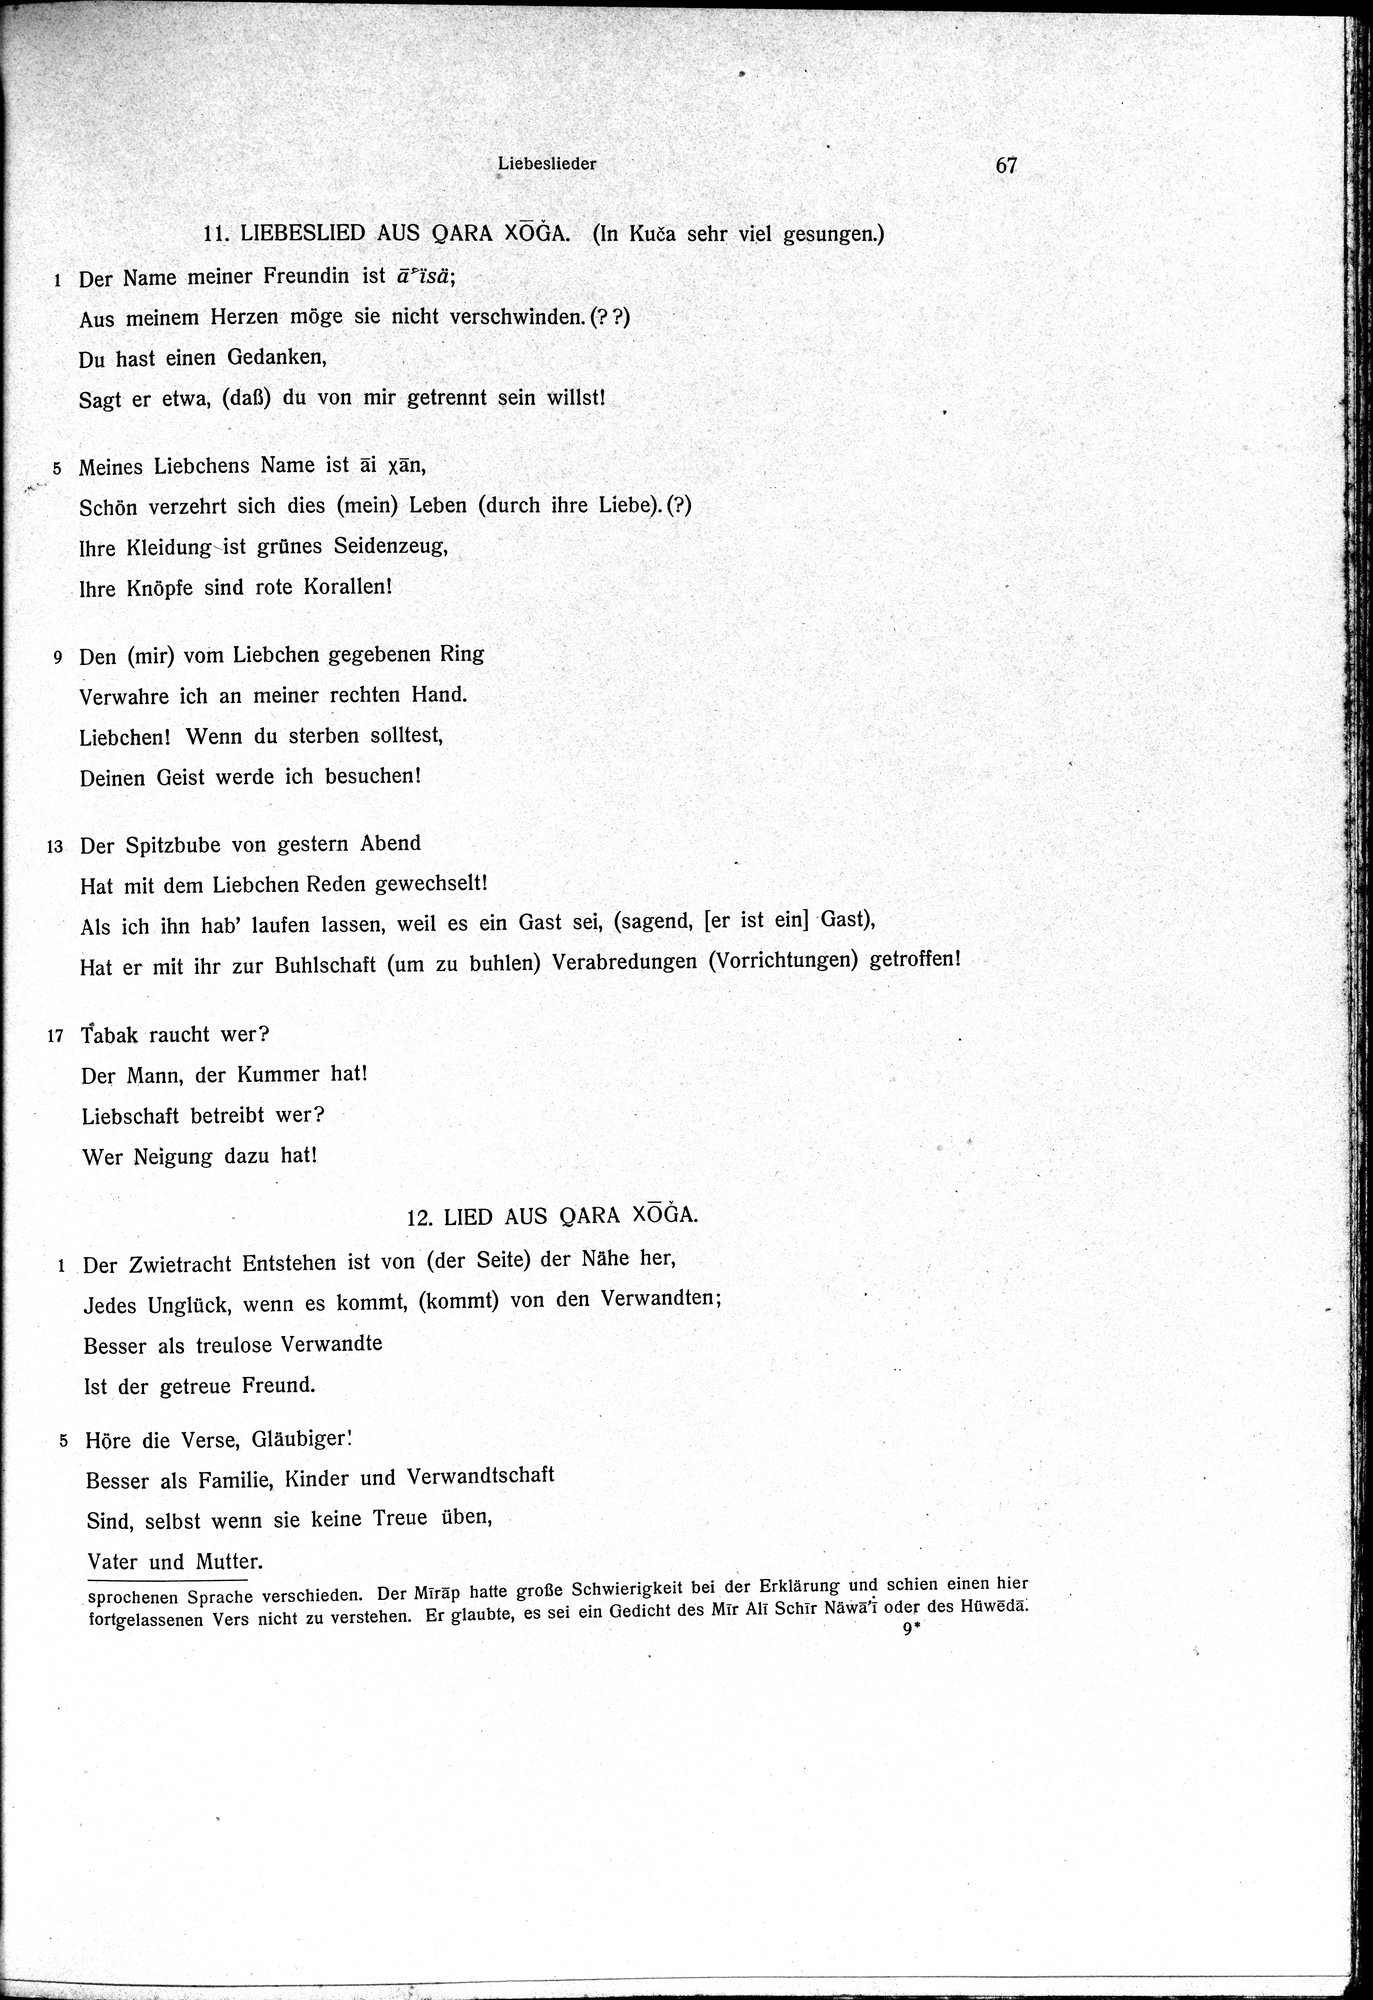 Sprichwörter und Lieder aus der Gegend von Turfan : vol.1 / Page 79 (Grayscale High Resolution Image)